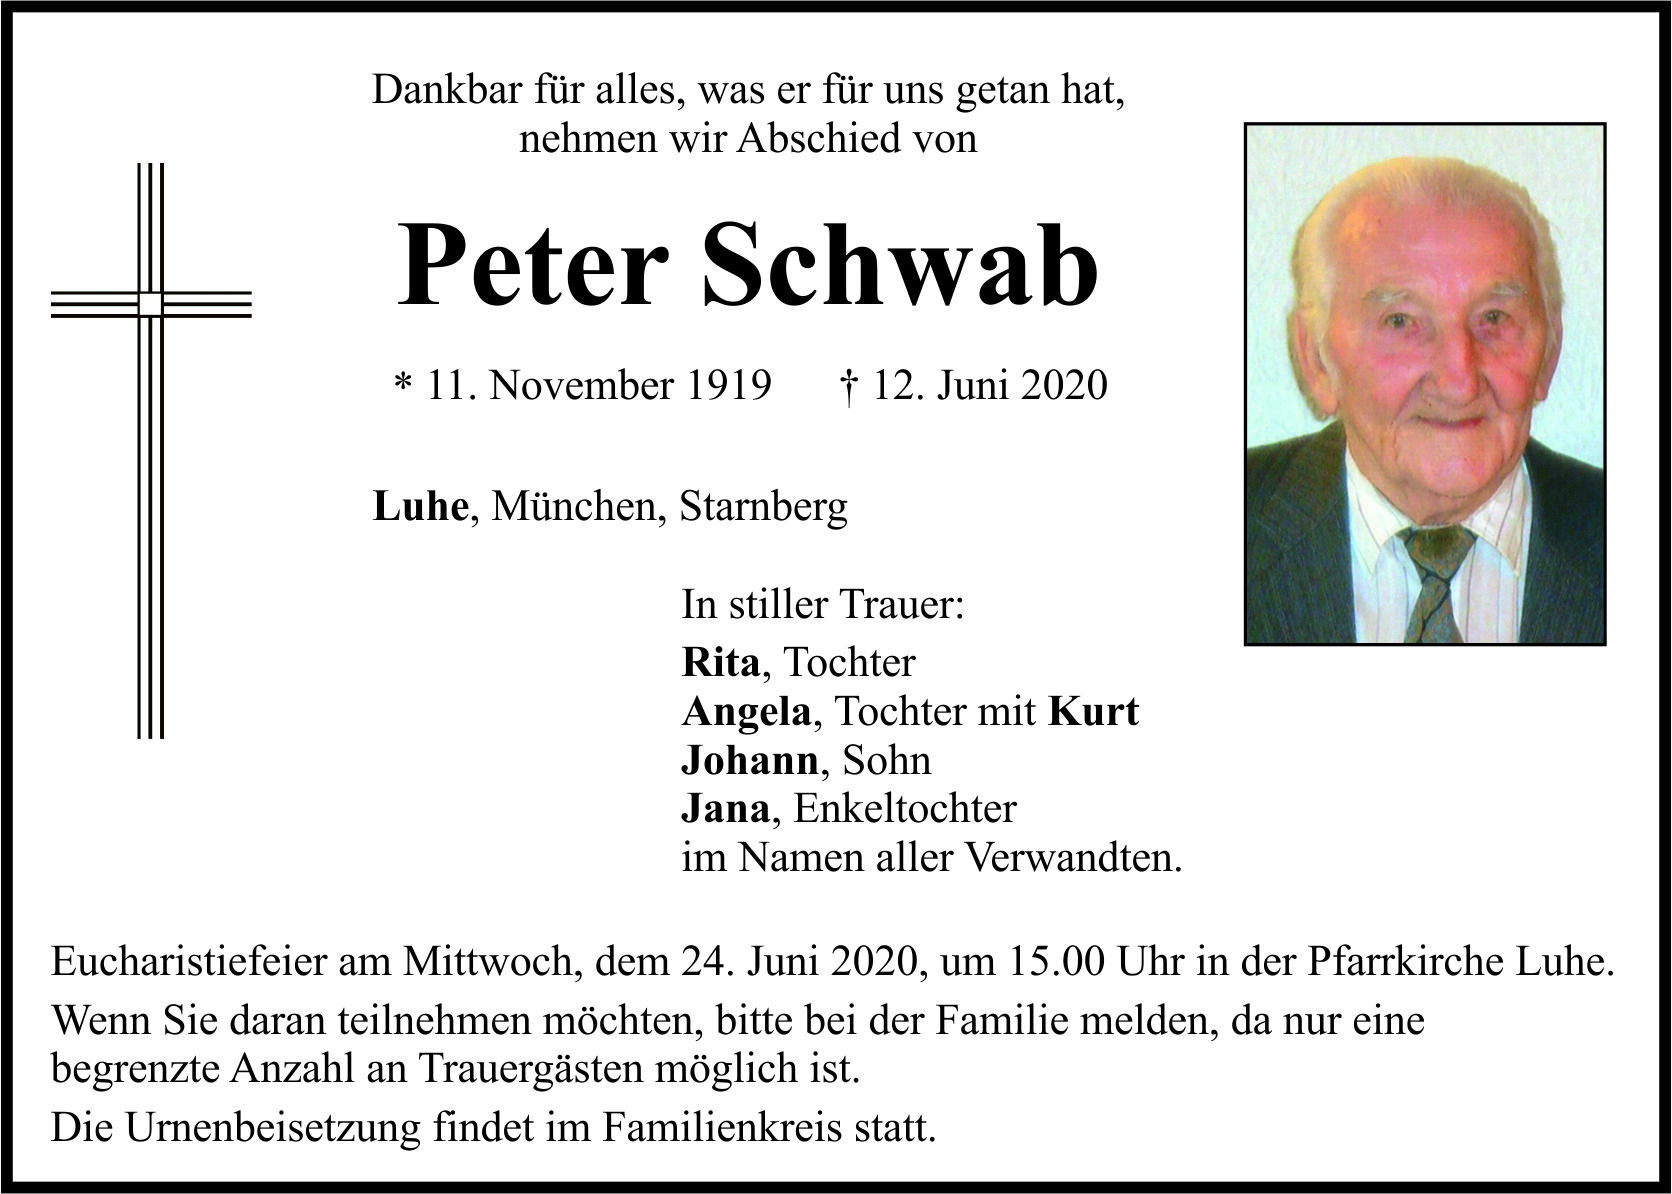 Traueranzeige Peter Schwab, Luhe